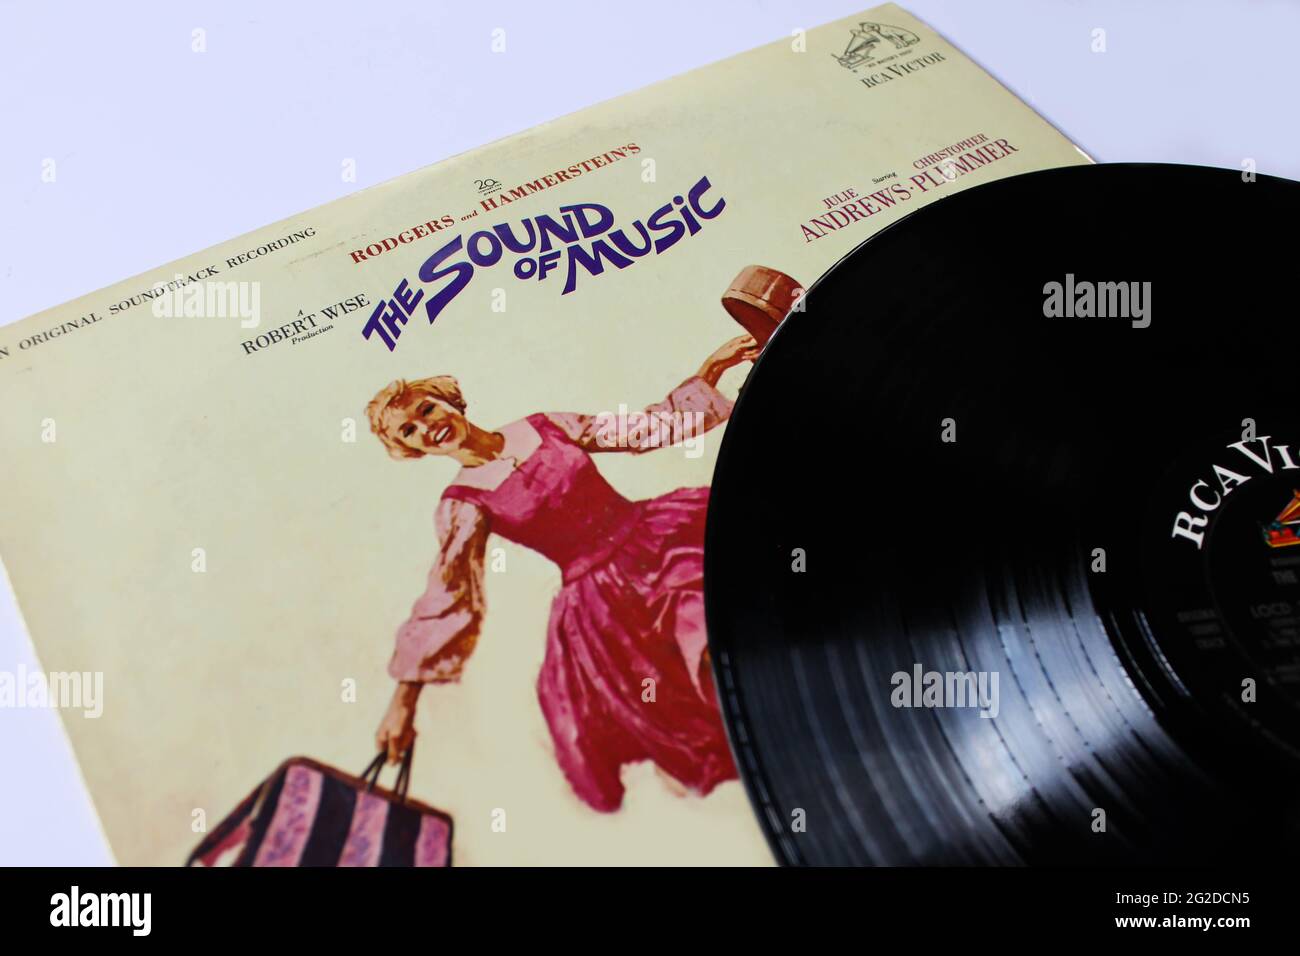 La banda sonora de la película The Sound of Music fue lanzada en 1965 por RCA Victor. Álbum en disco LP de vinilo. Portada del álbum Foto de stock